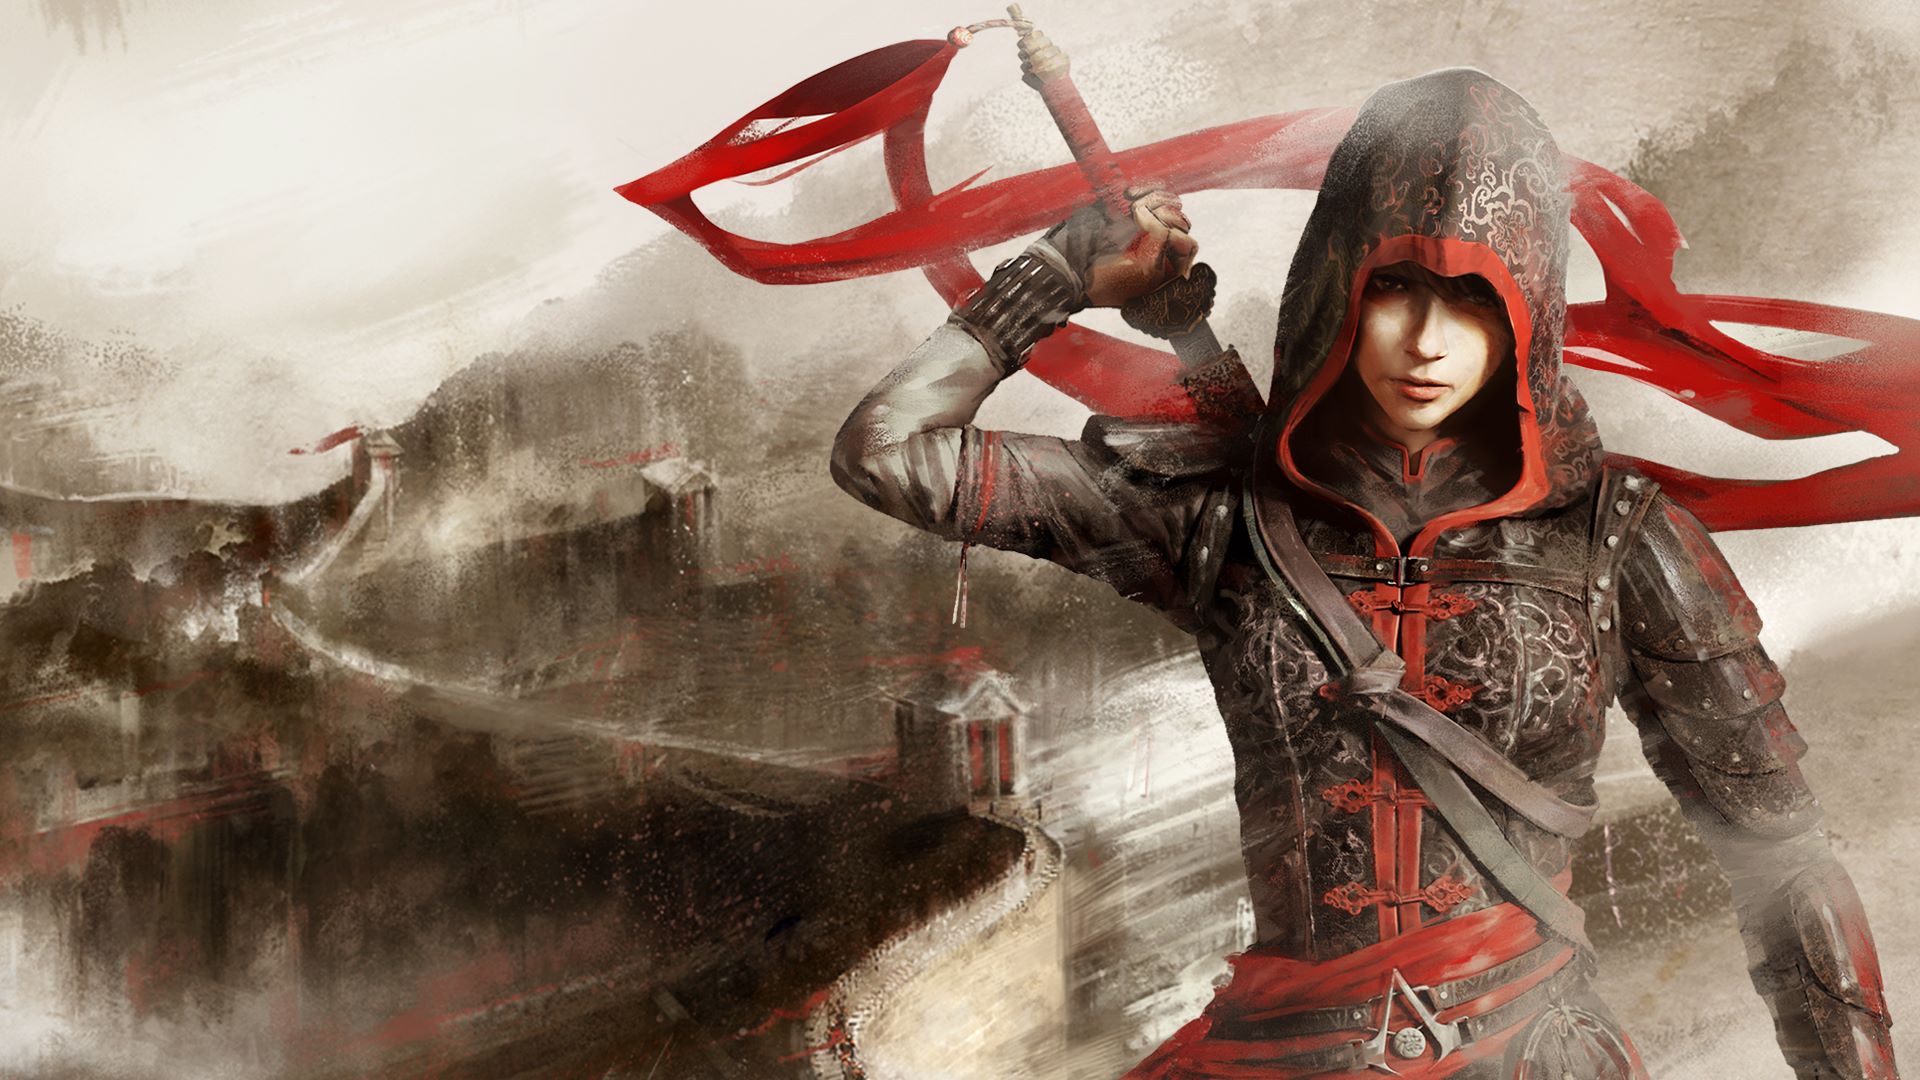 โหลดด่วน! Ubisoft ใจดีแจก Assassin’s Creed Chronicles: China  ฟรี ถึงวันที่  5 ก.พ.นี้